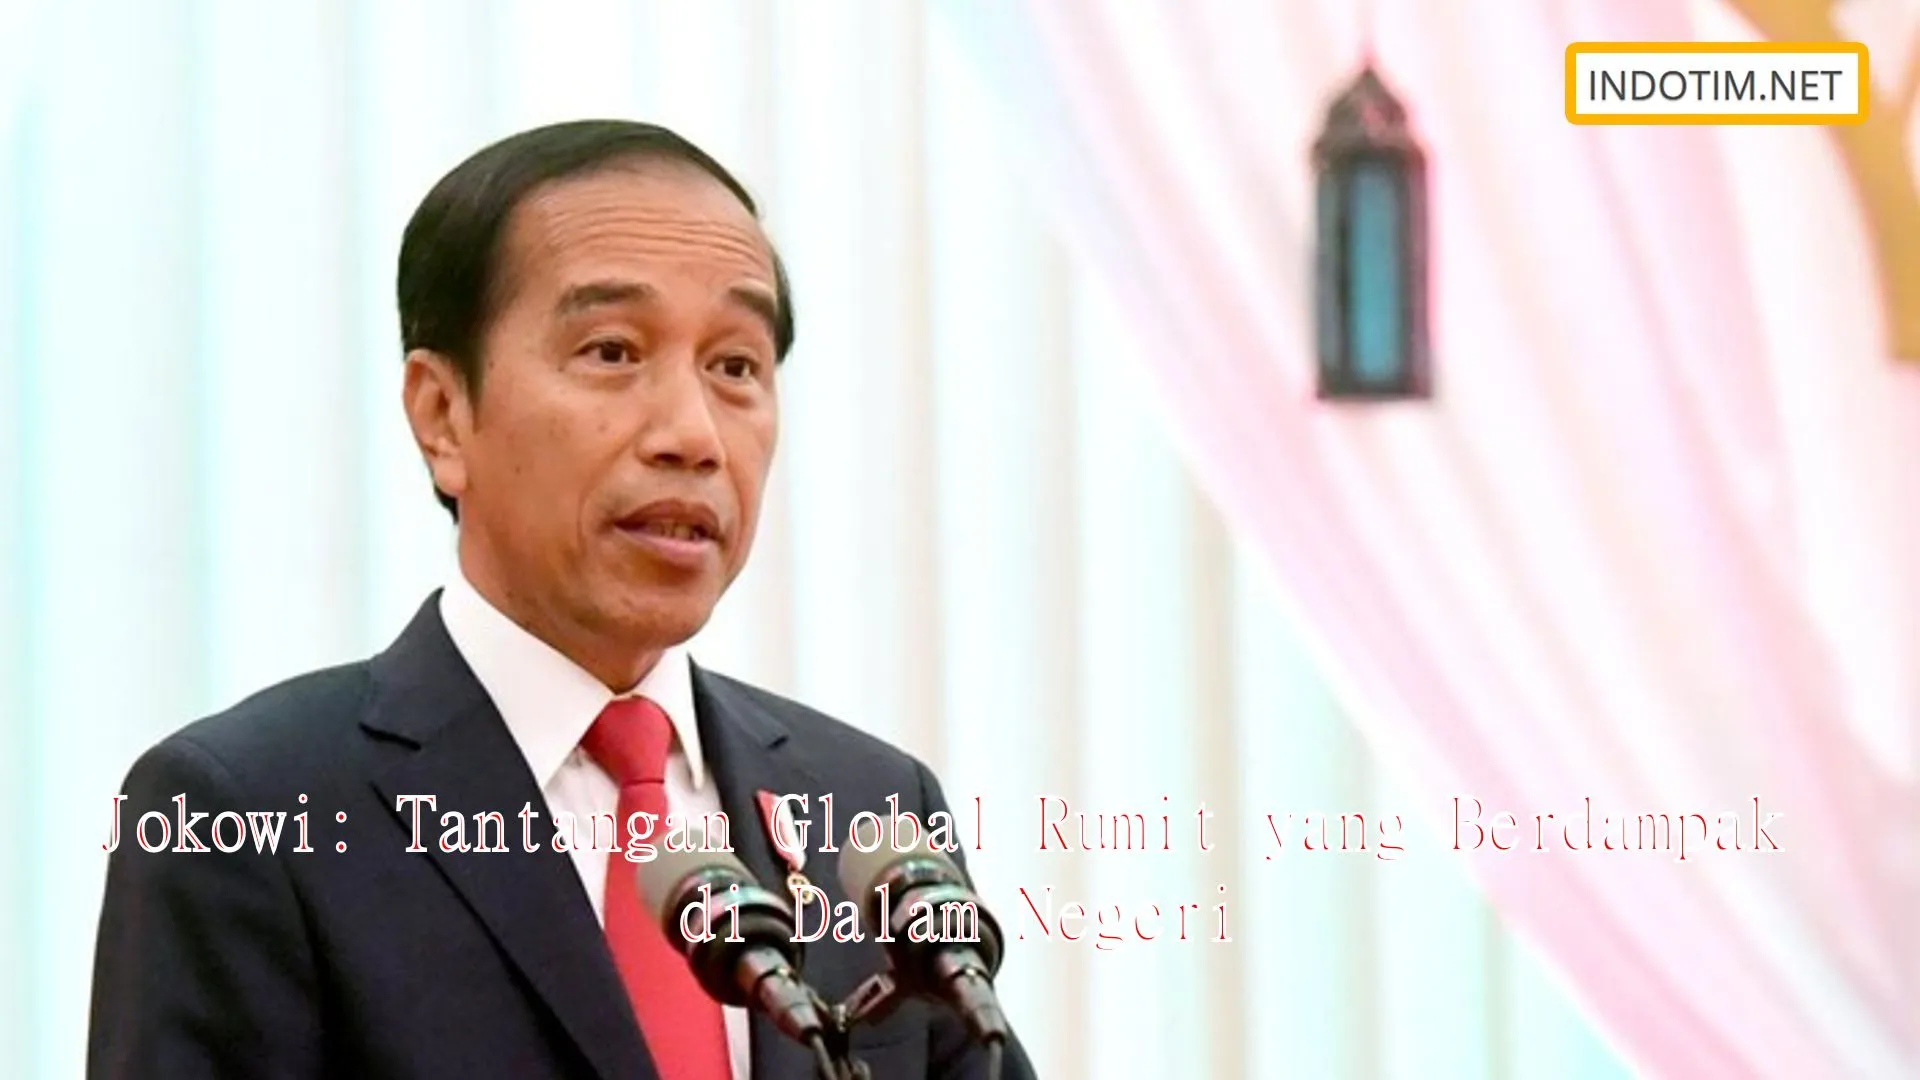 Jokowi: Tantangan Global Rumit yang Berdampak di Dalam Negeri